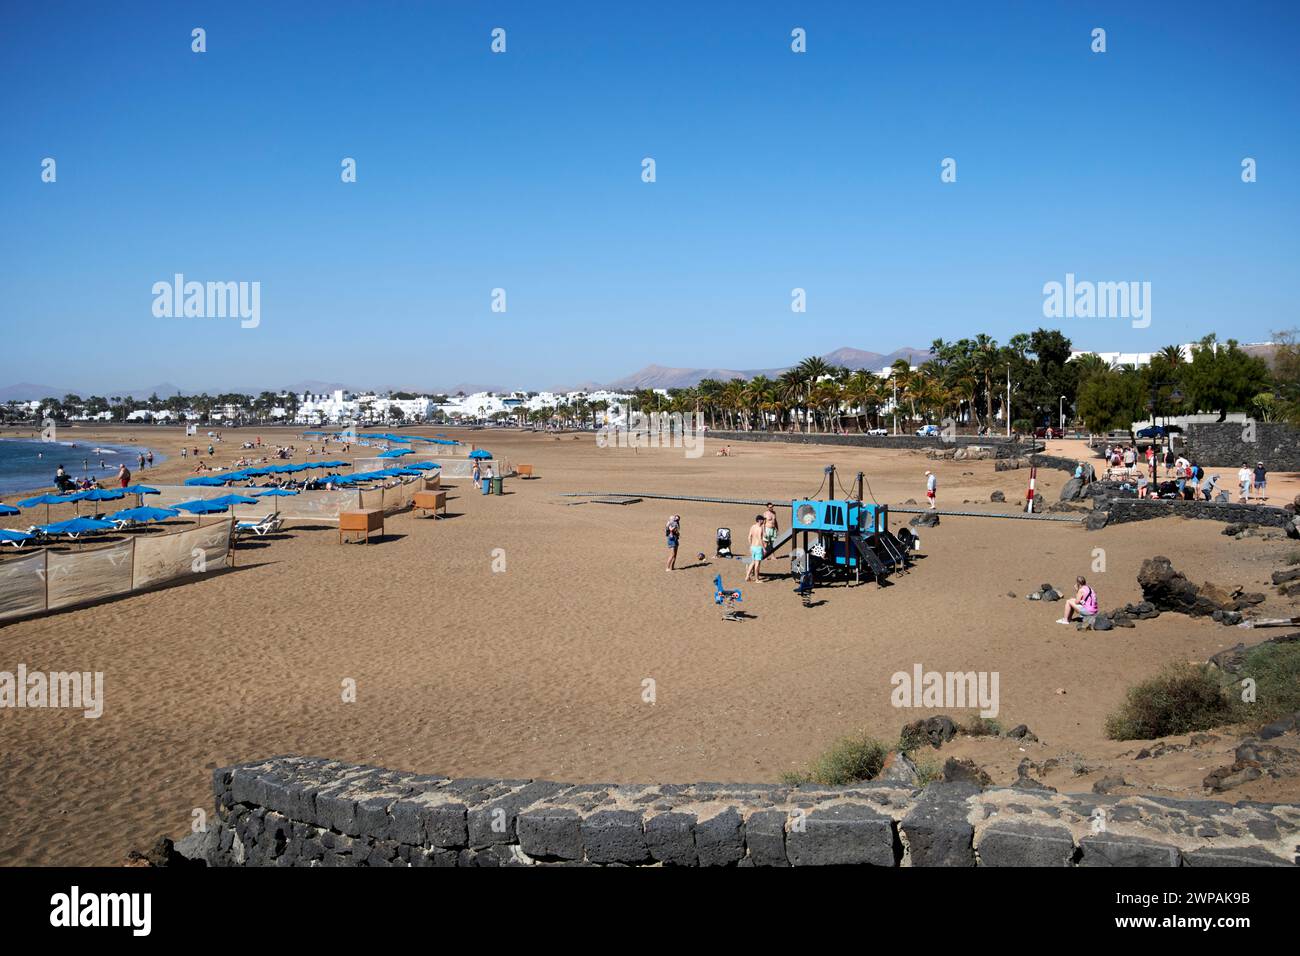 Playa de los Pocillos puerto del carmen Lanzarote, Canary Islands, spain Stock Photo